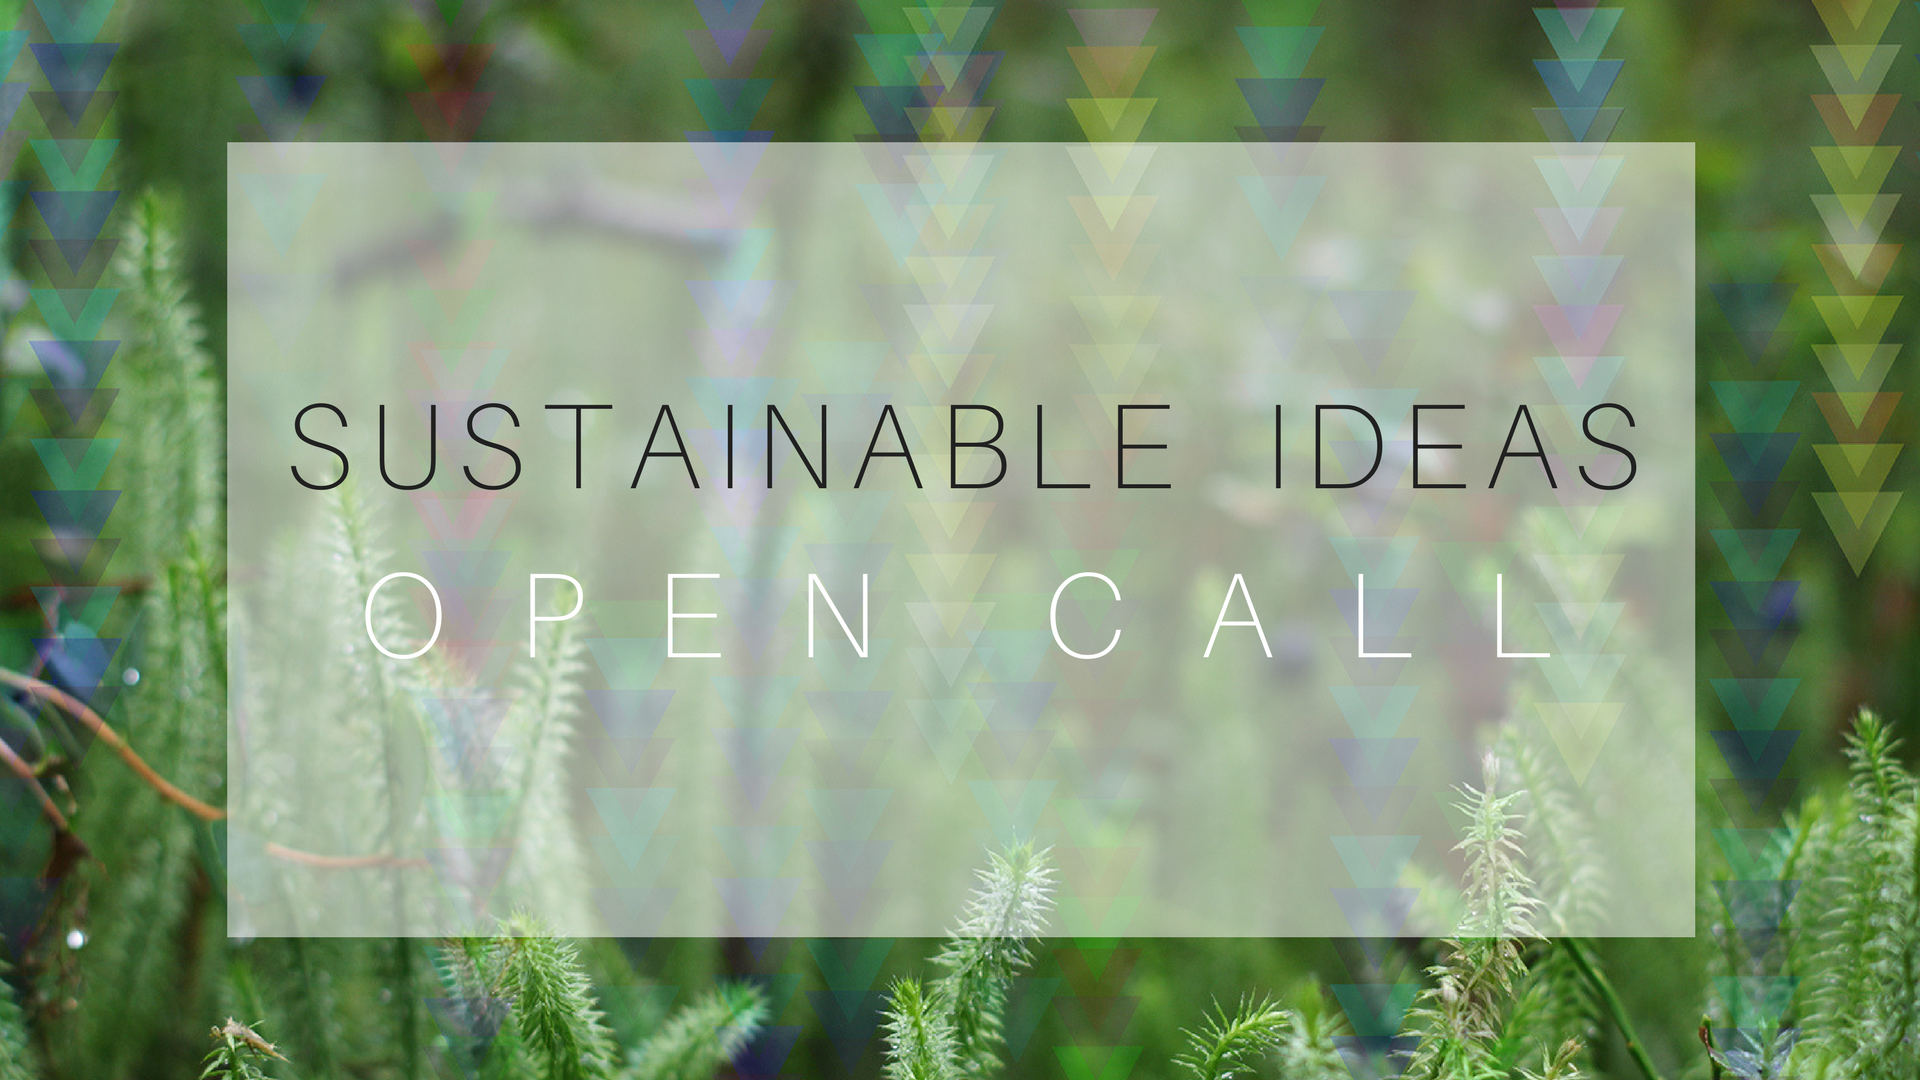 Sustainable Ideas open call